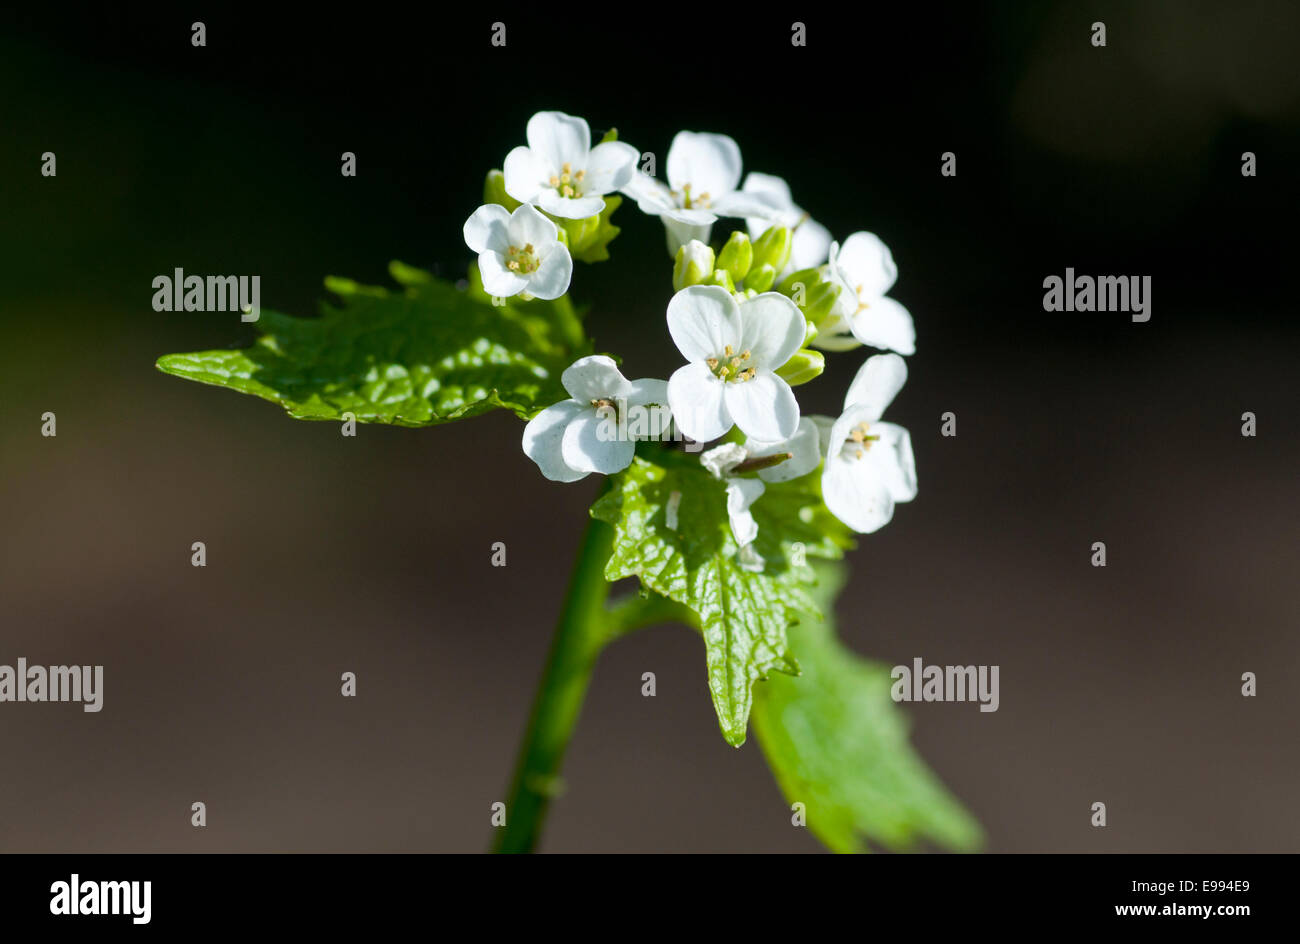 Blüten und Blätter der Knoblauchsrauke (Alliaria Petiolata) vor einem dunklen Hintergrund Stockfoto